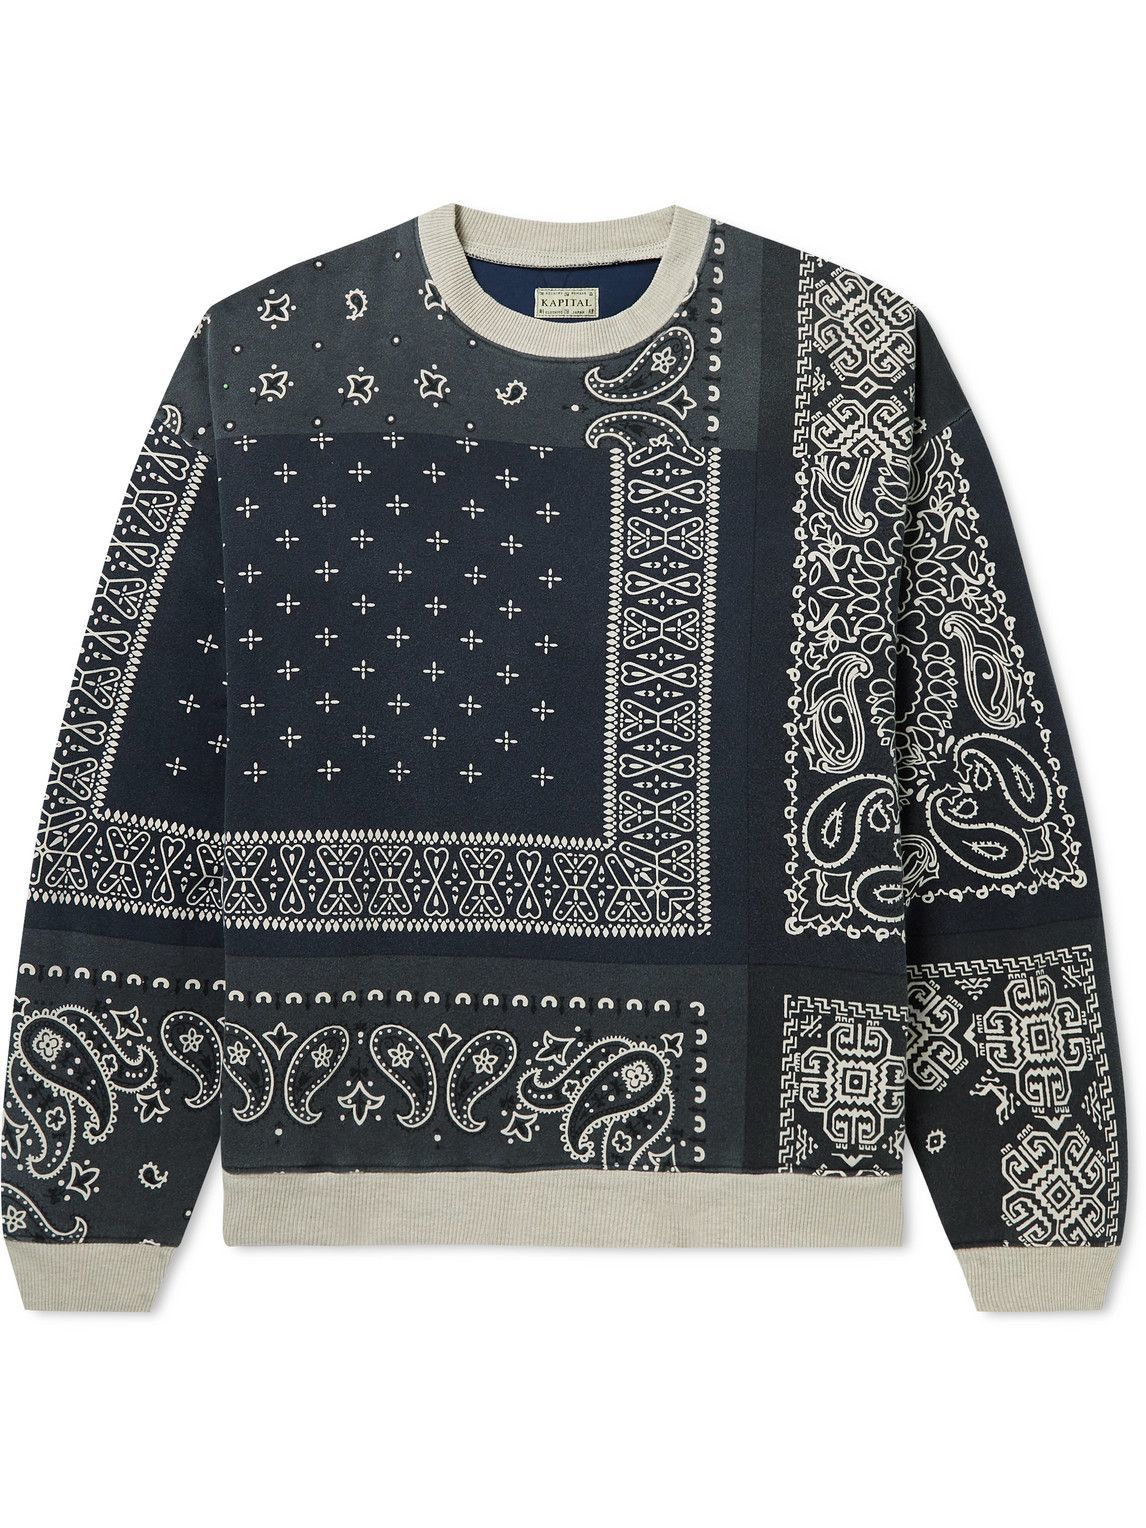 KAPITAL - Bandana-Print Cotton-Jersey and Quilted Shell Sweatshirt ...